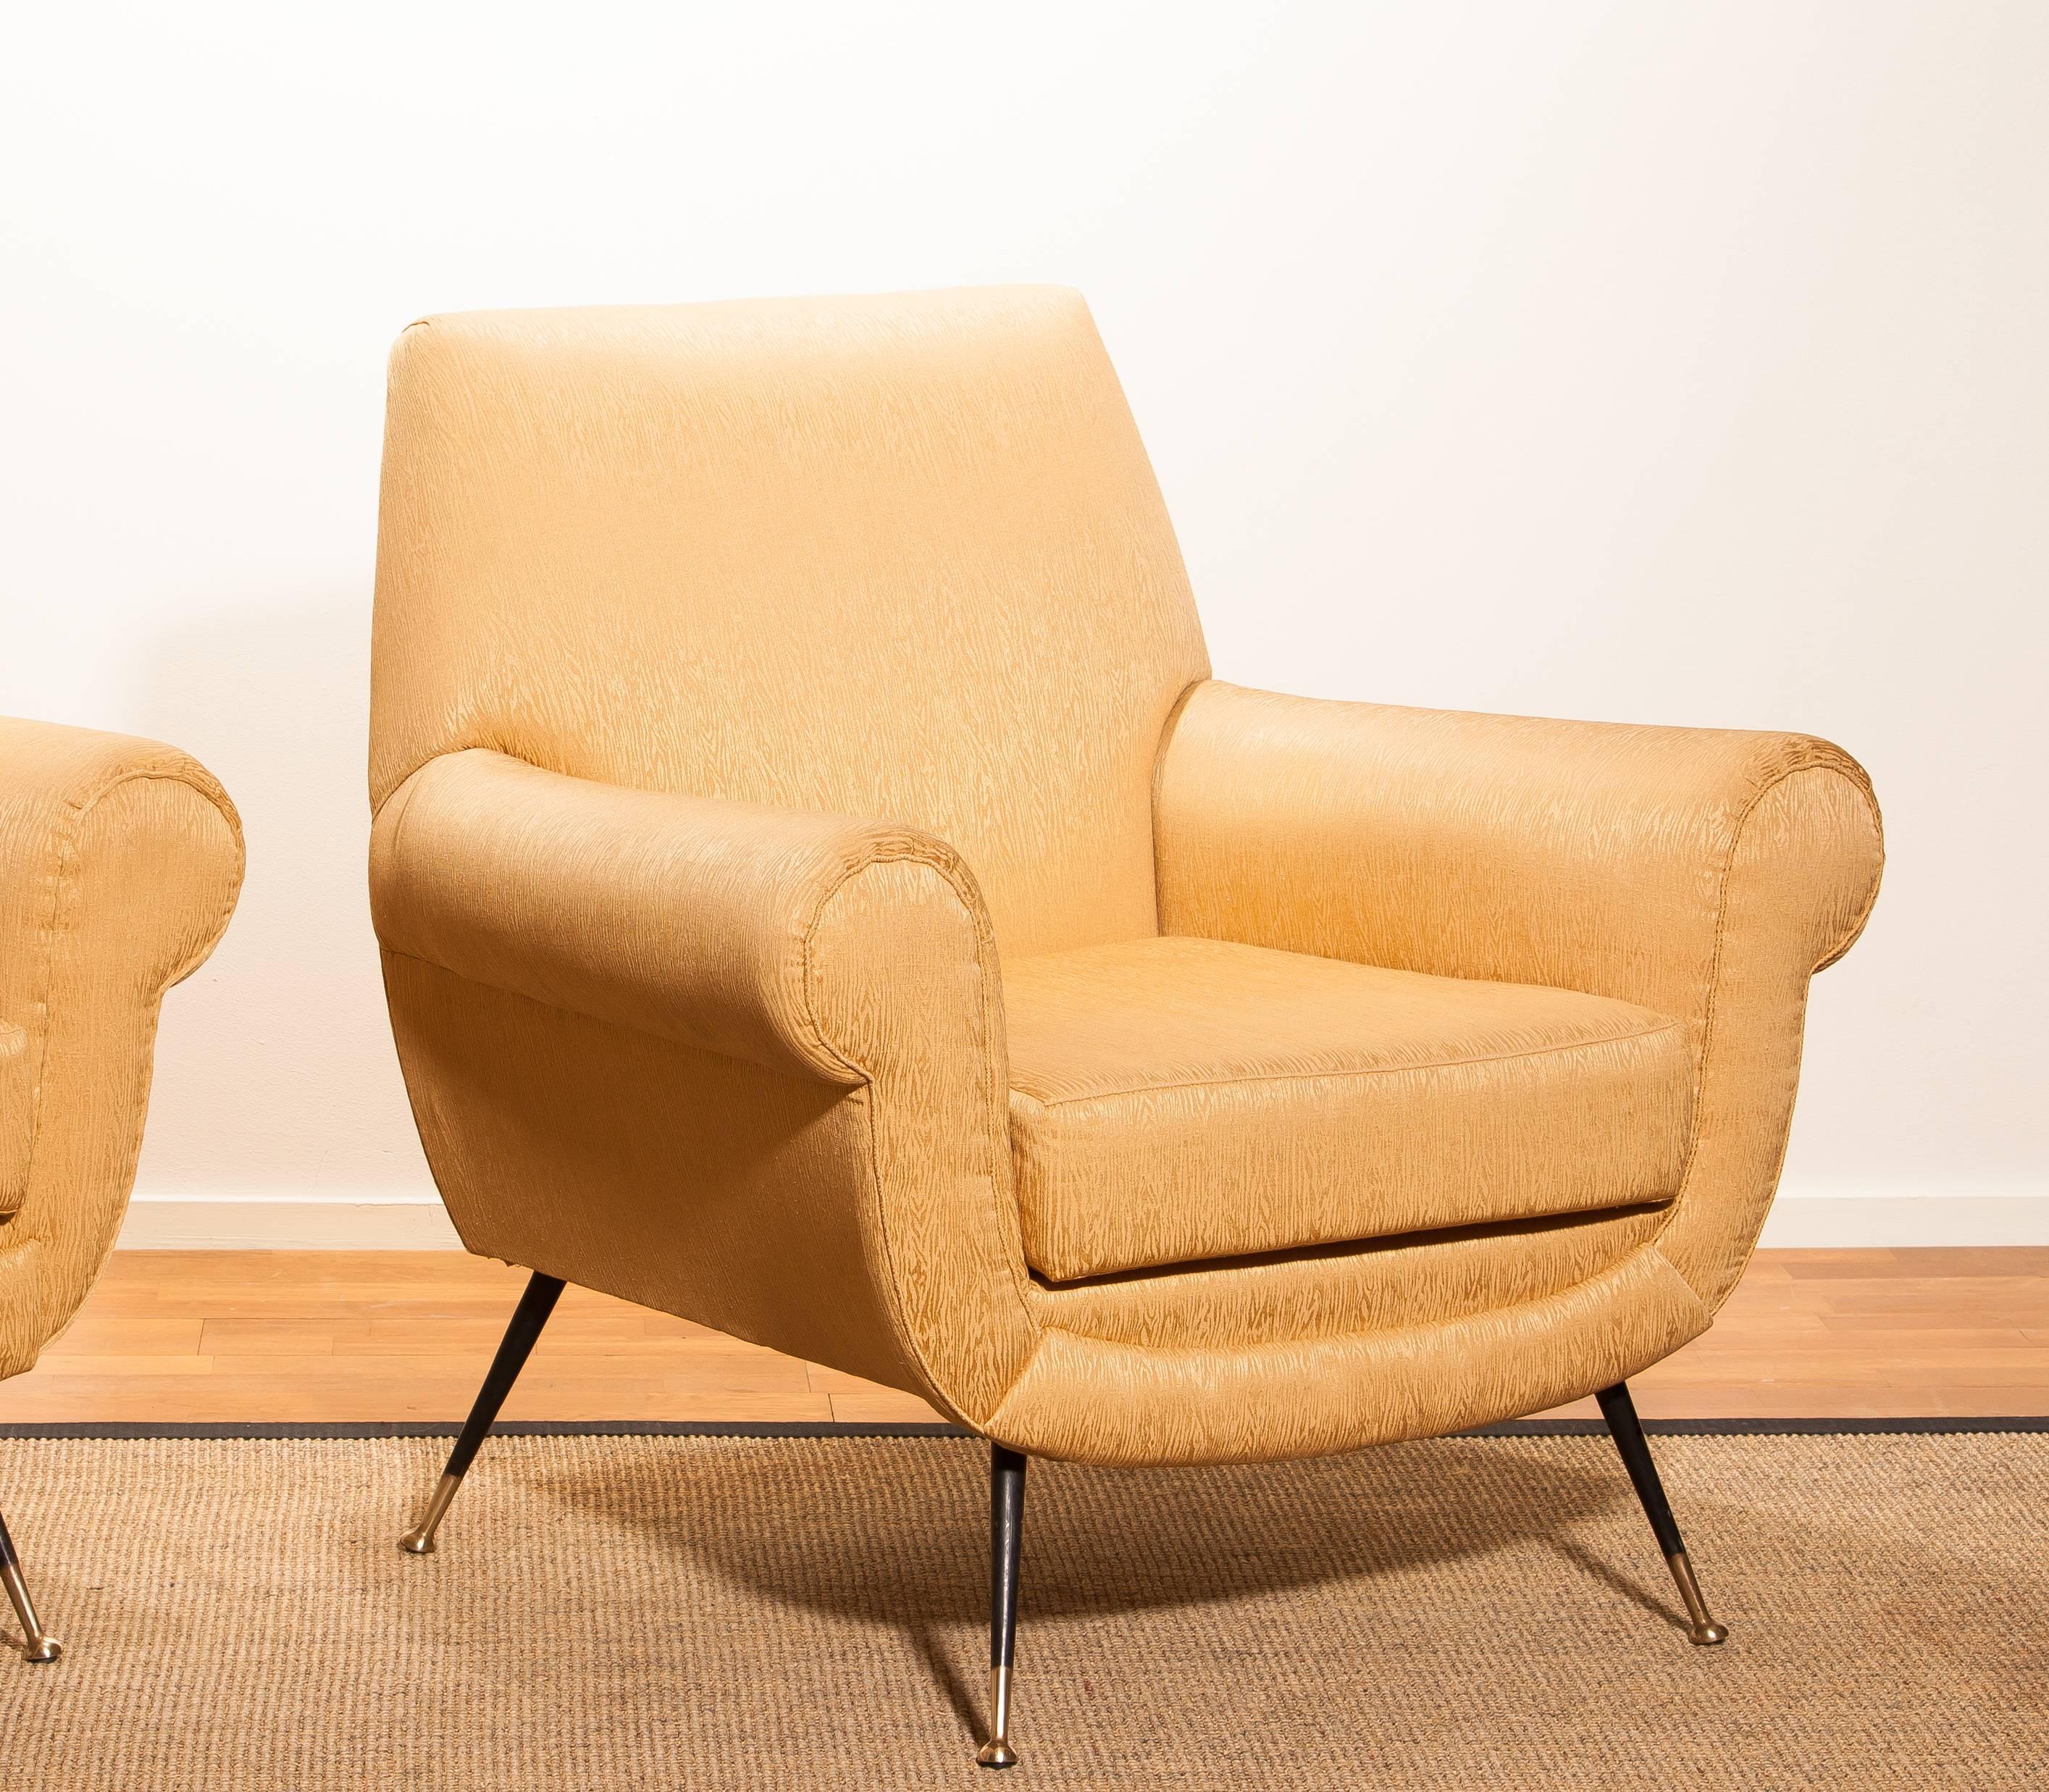 Golden Jacquard Upholstered Easy Chairs by Gigi Radice for Minotti, Brass Legs. 5